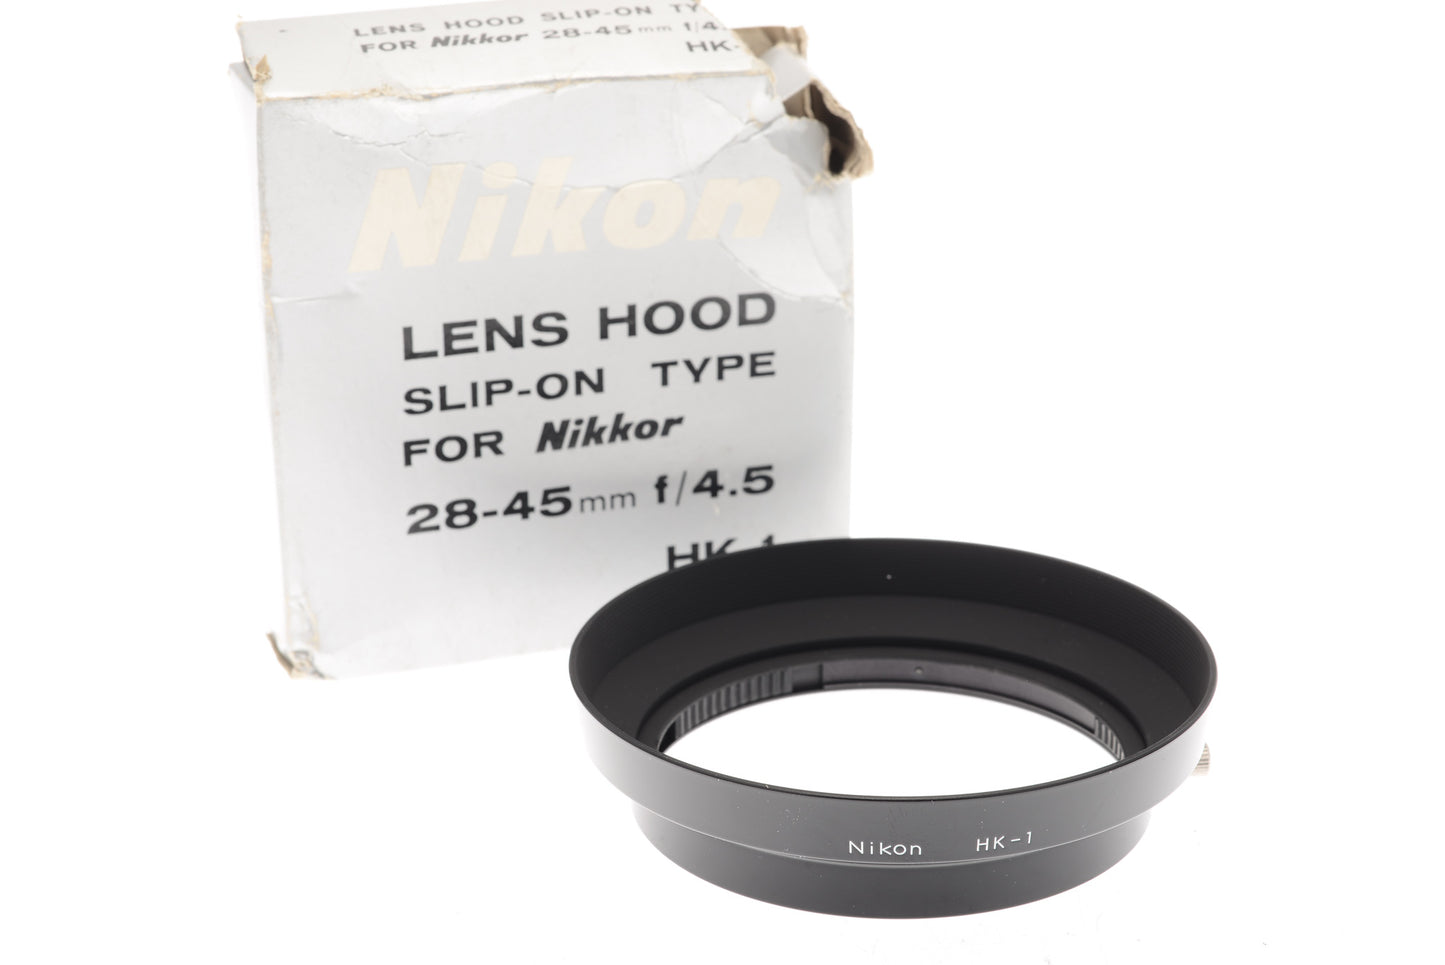 Nikon HK-1 Lens Hood - Accessory